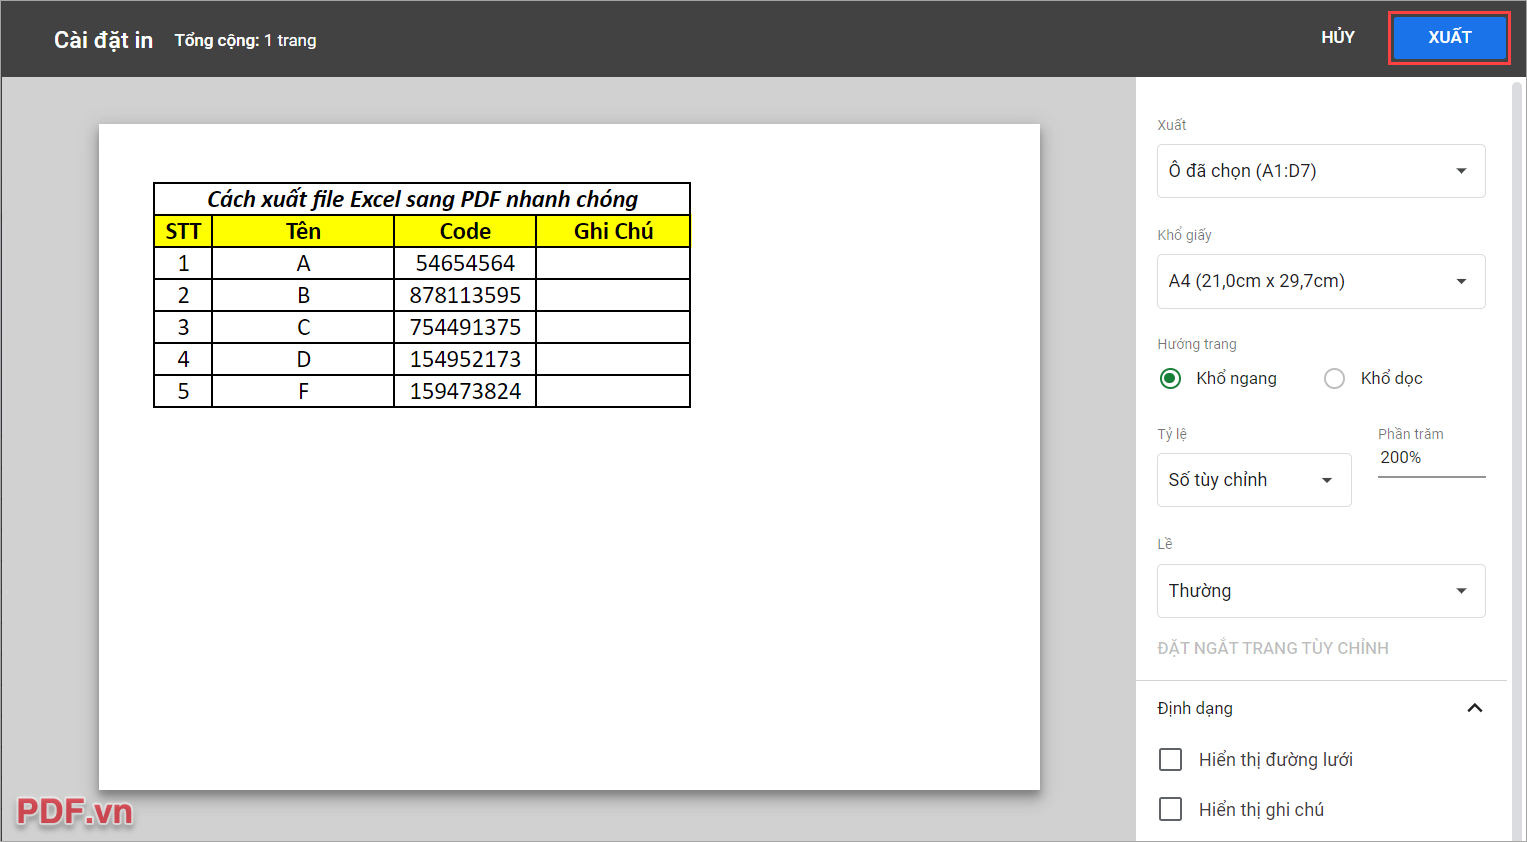 Chọn Xuất để tiến hành xuất file Excel sang PDF